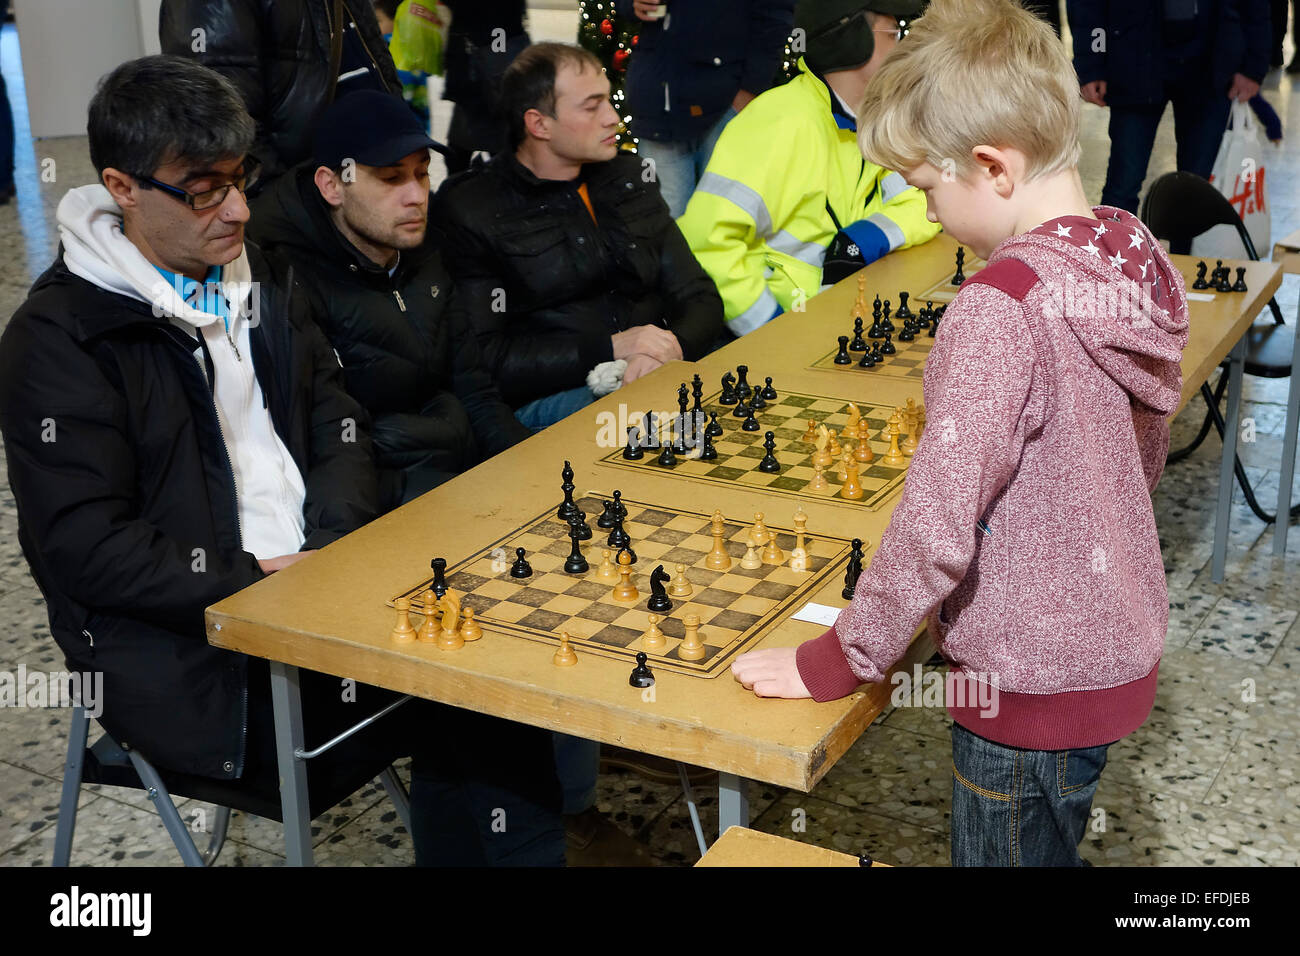 10 Jahre alter Junge spielt simultan Schach-Spiel mit 4 Erwachsenen Teilnehmern.  Nordstan, Göteborg, Göteborg, Schweden Stockfoto